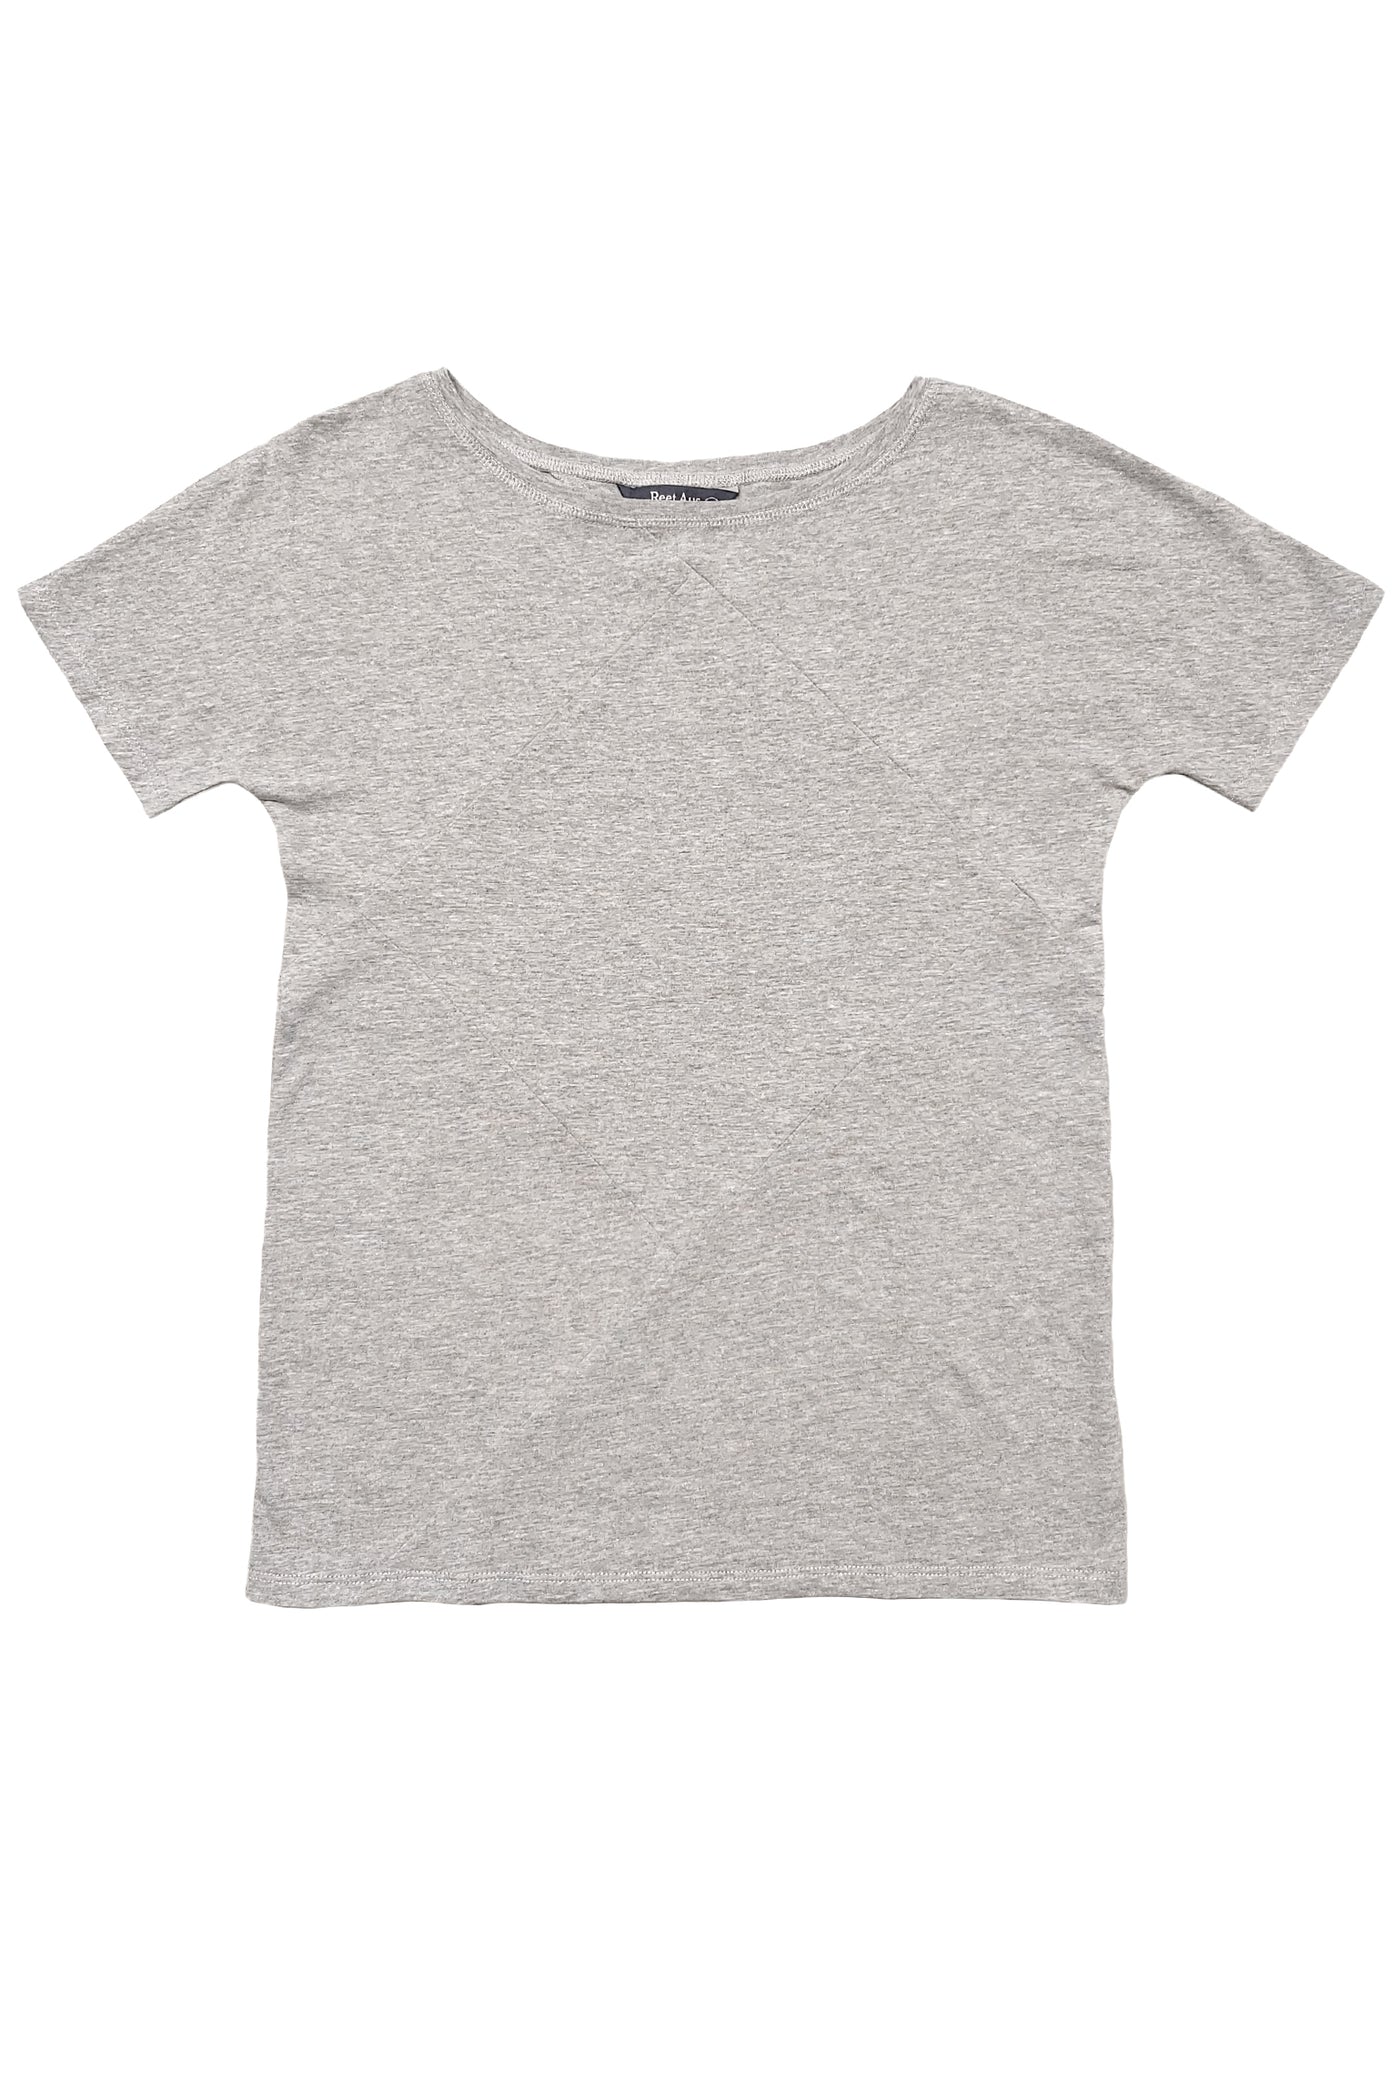 Up-shirt for women, diamond motif | Grey - Reet Aus